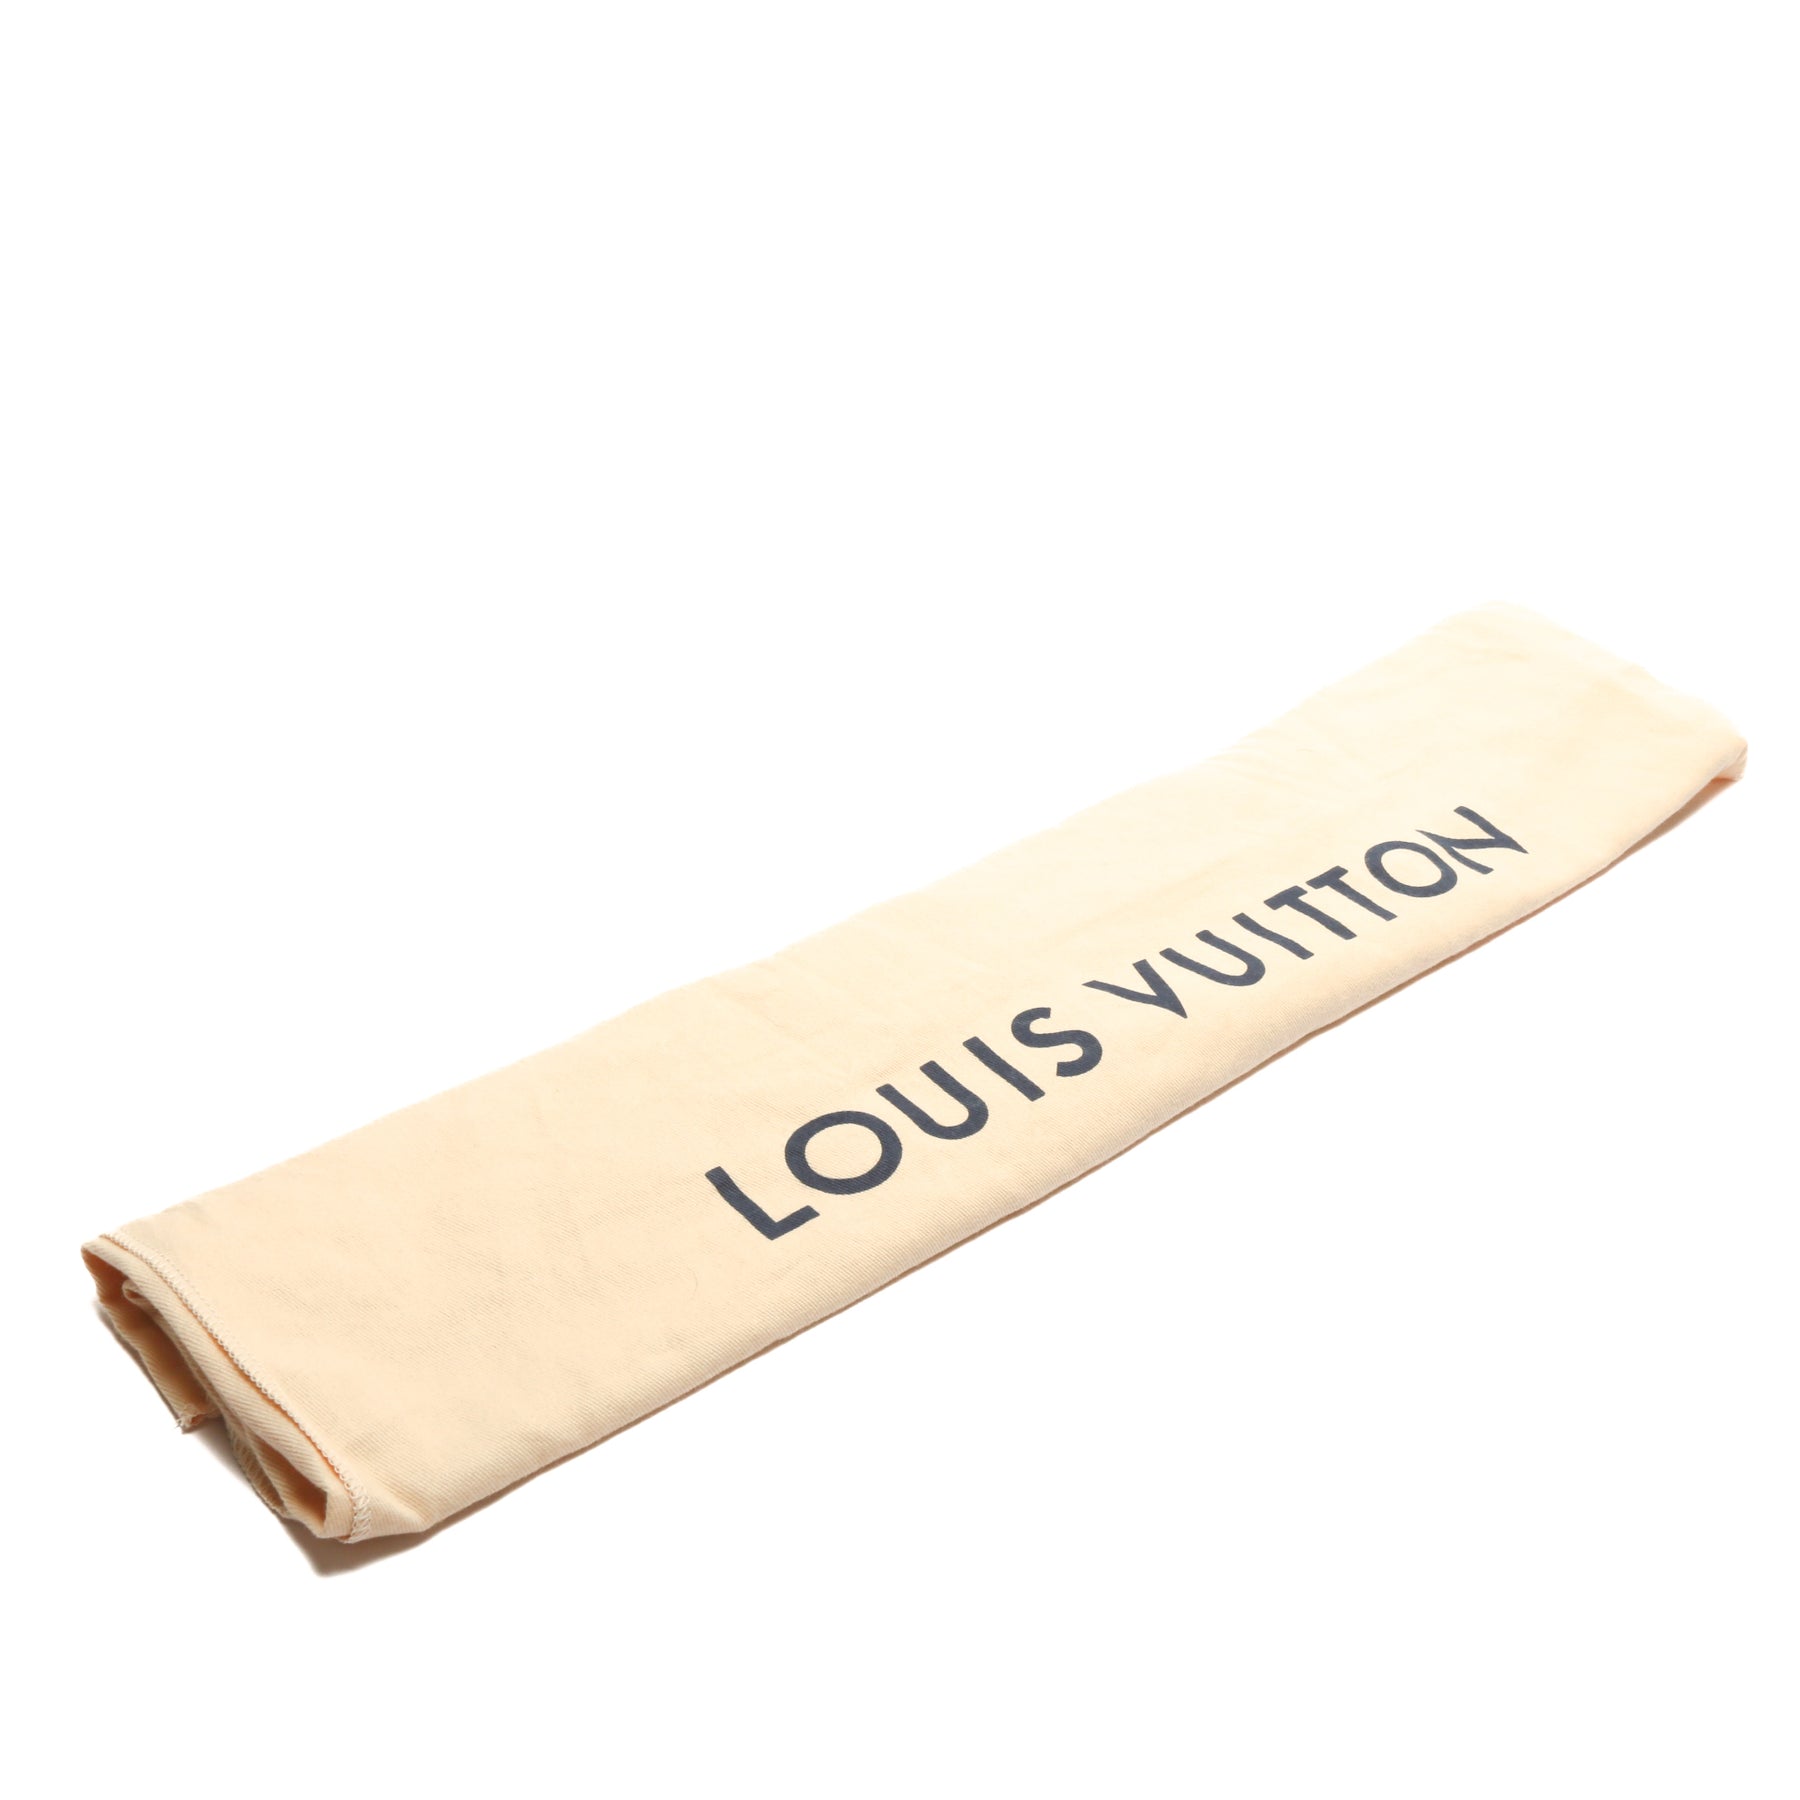 Louis Vuitton, Accessories, Authentic Louis Vuitton Dust Bag